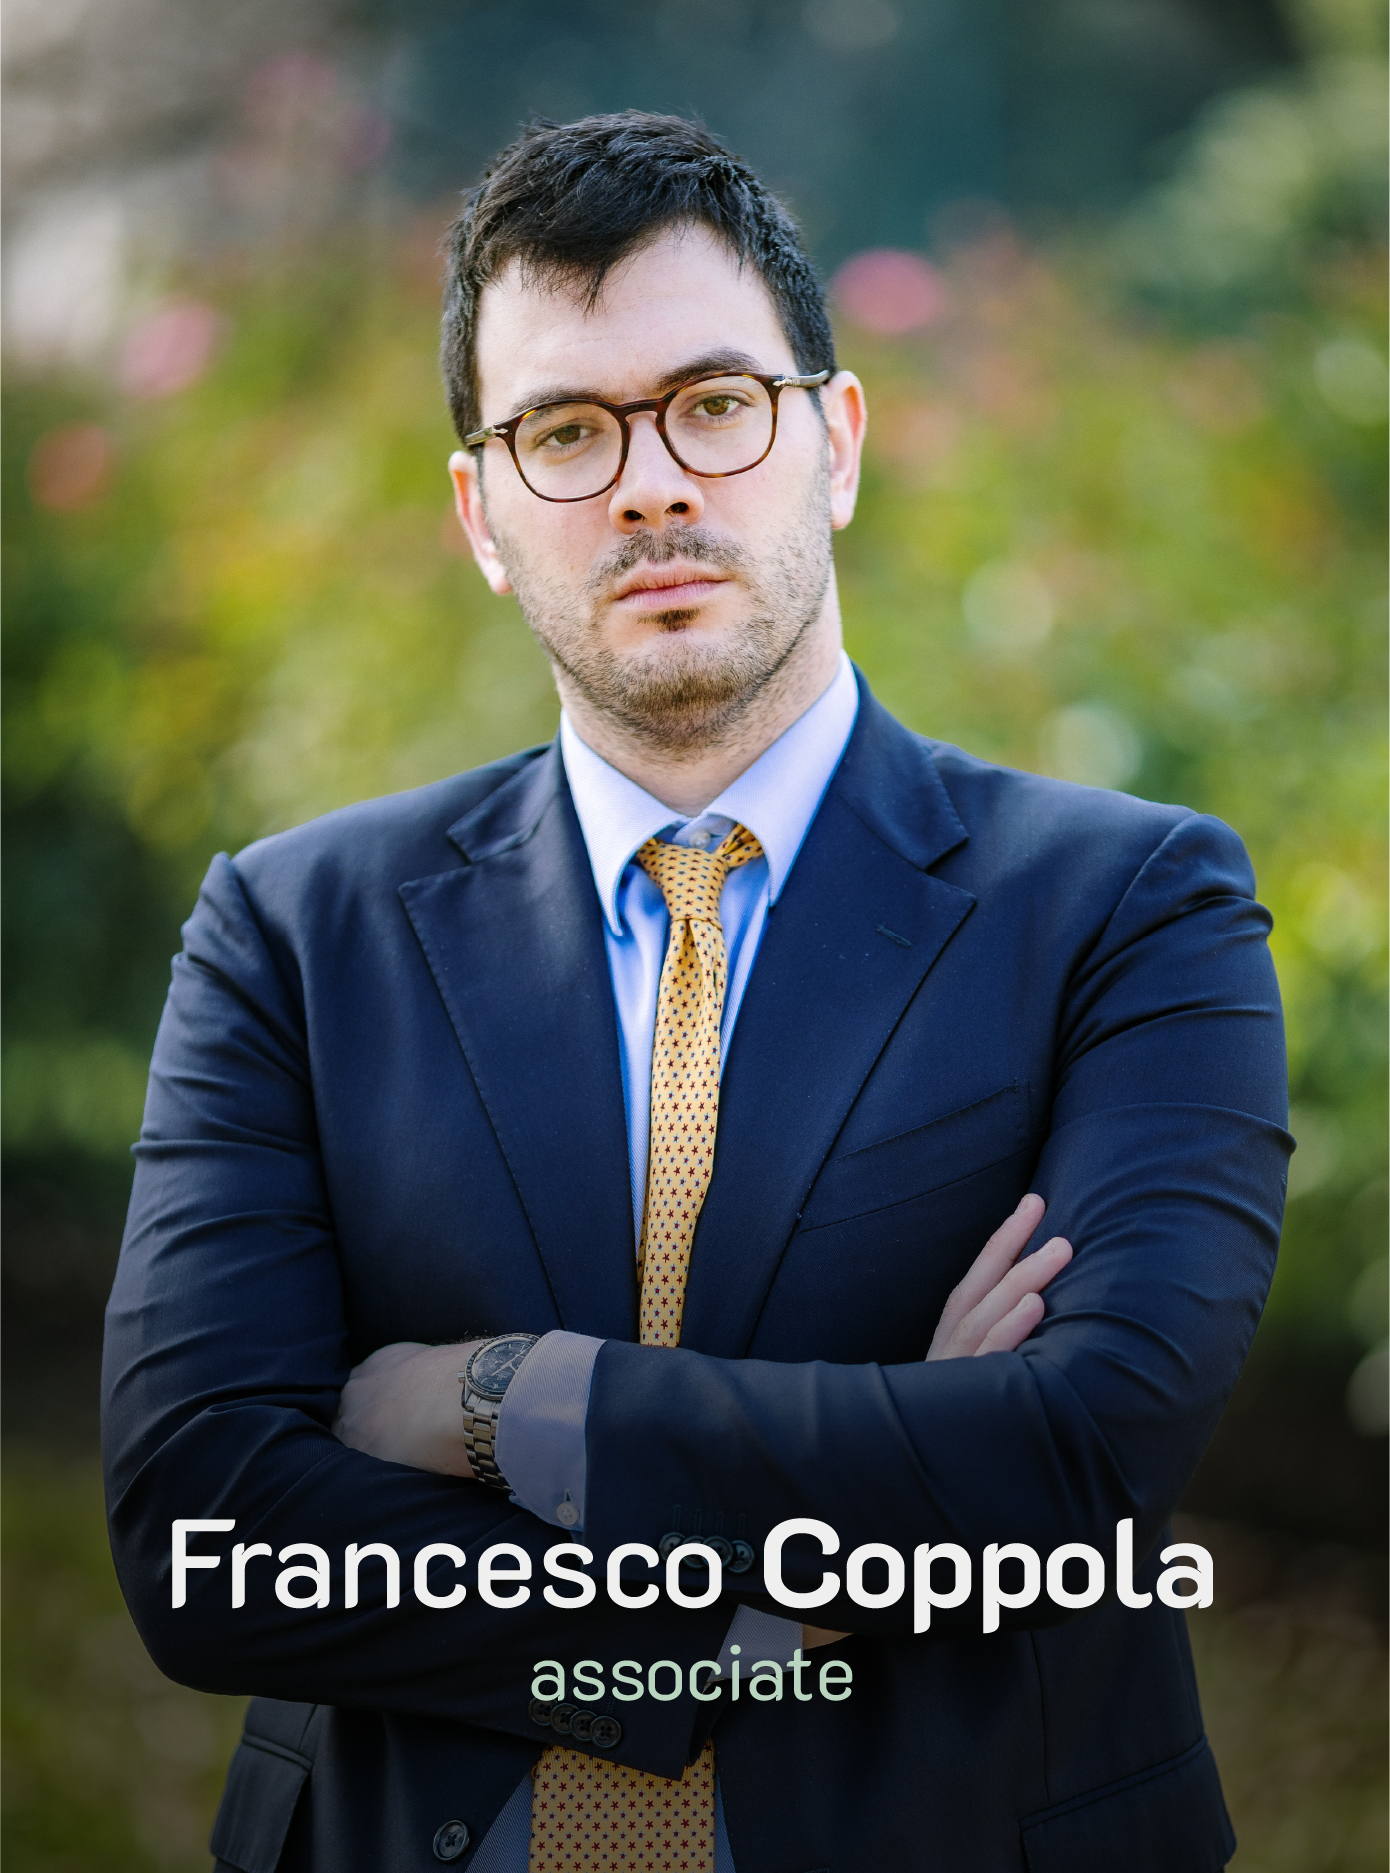 Francesco Coppola